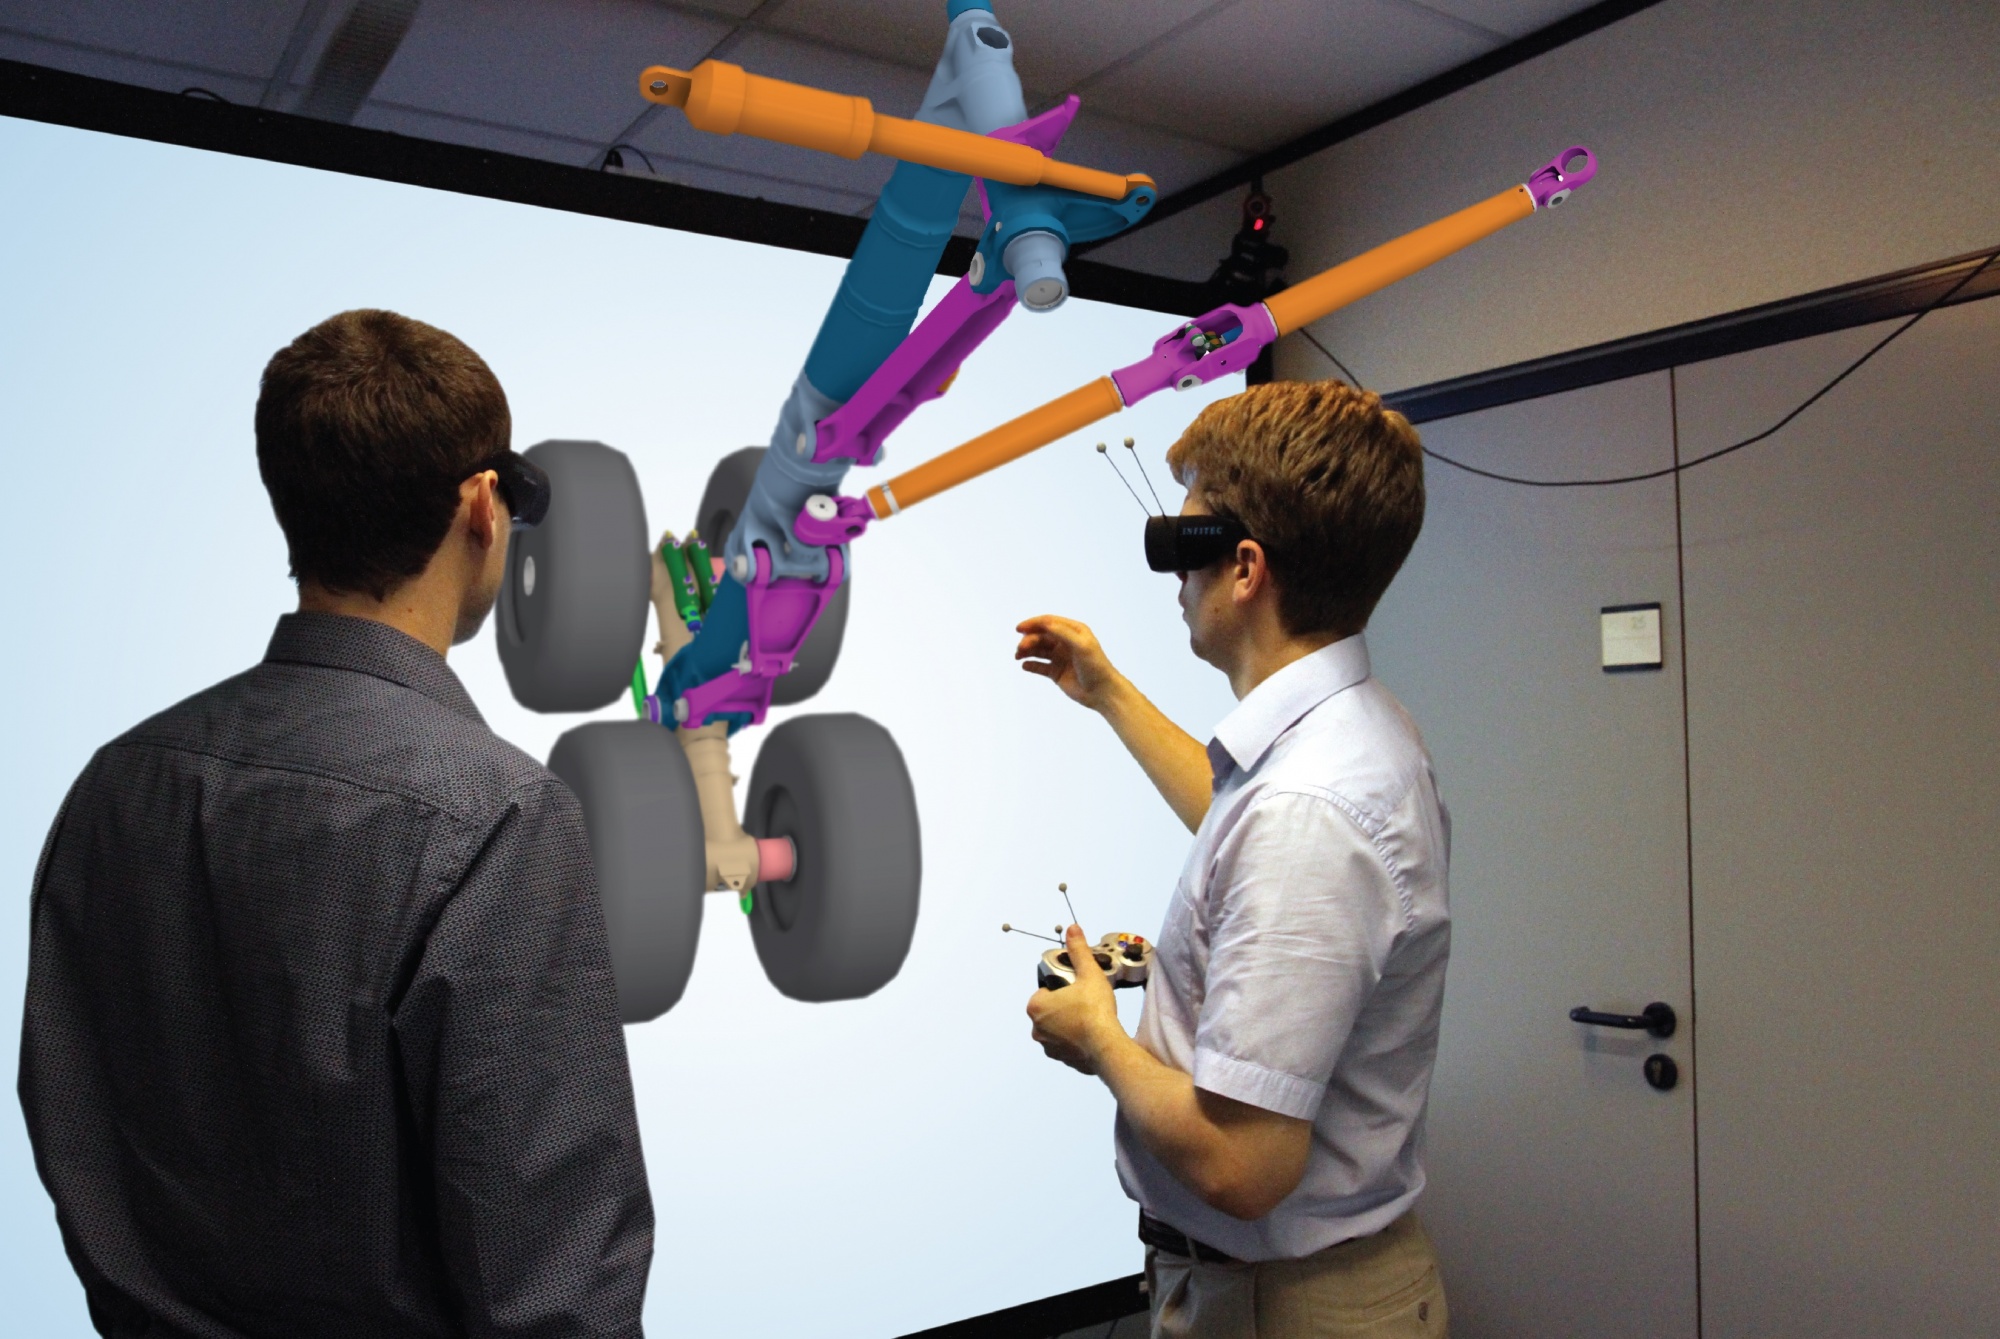 Технологии развлечений. Интерактивные технологии VR. Проектирование в виртуальной реальности. Технологии дополненной реальности в образовании. Виртуальная реальность в обучении.